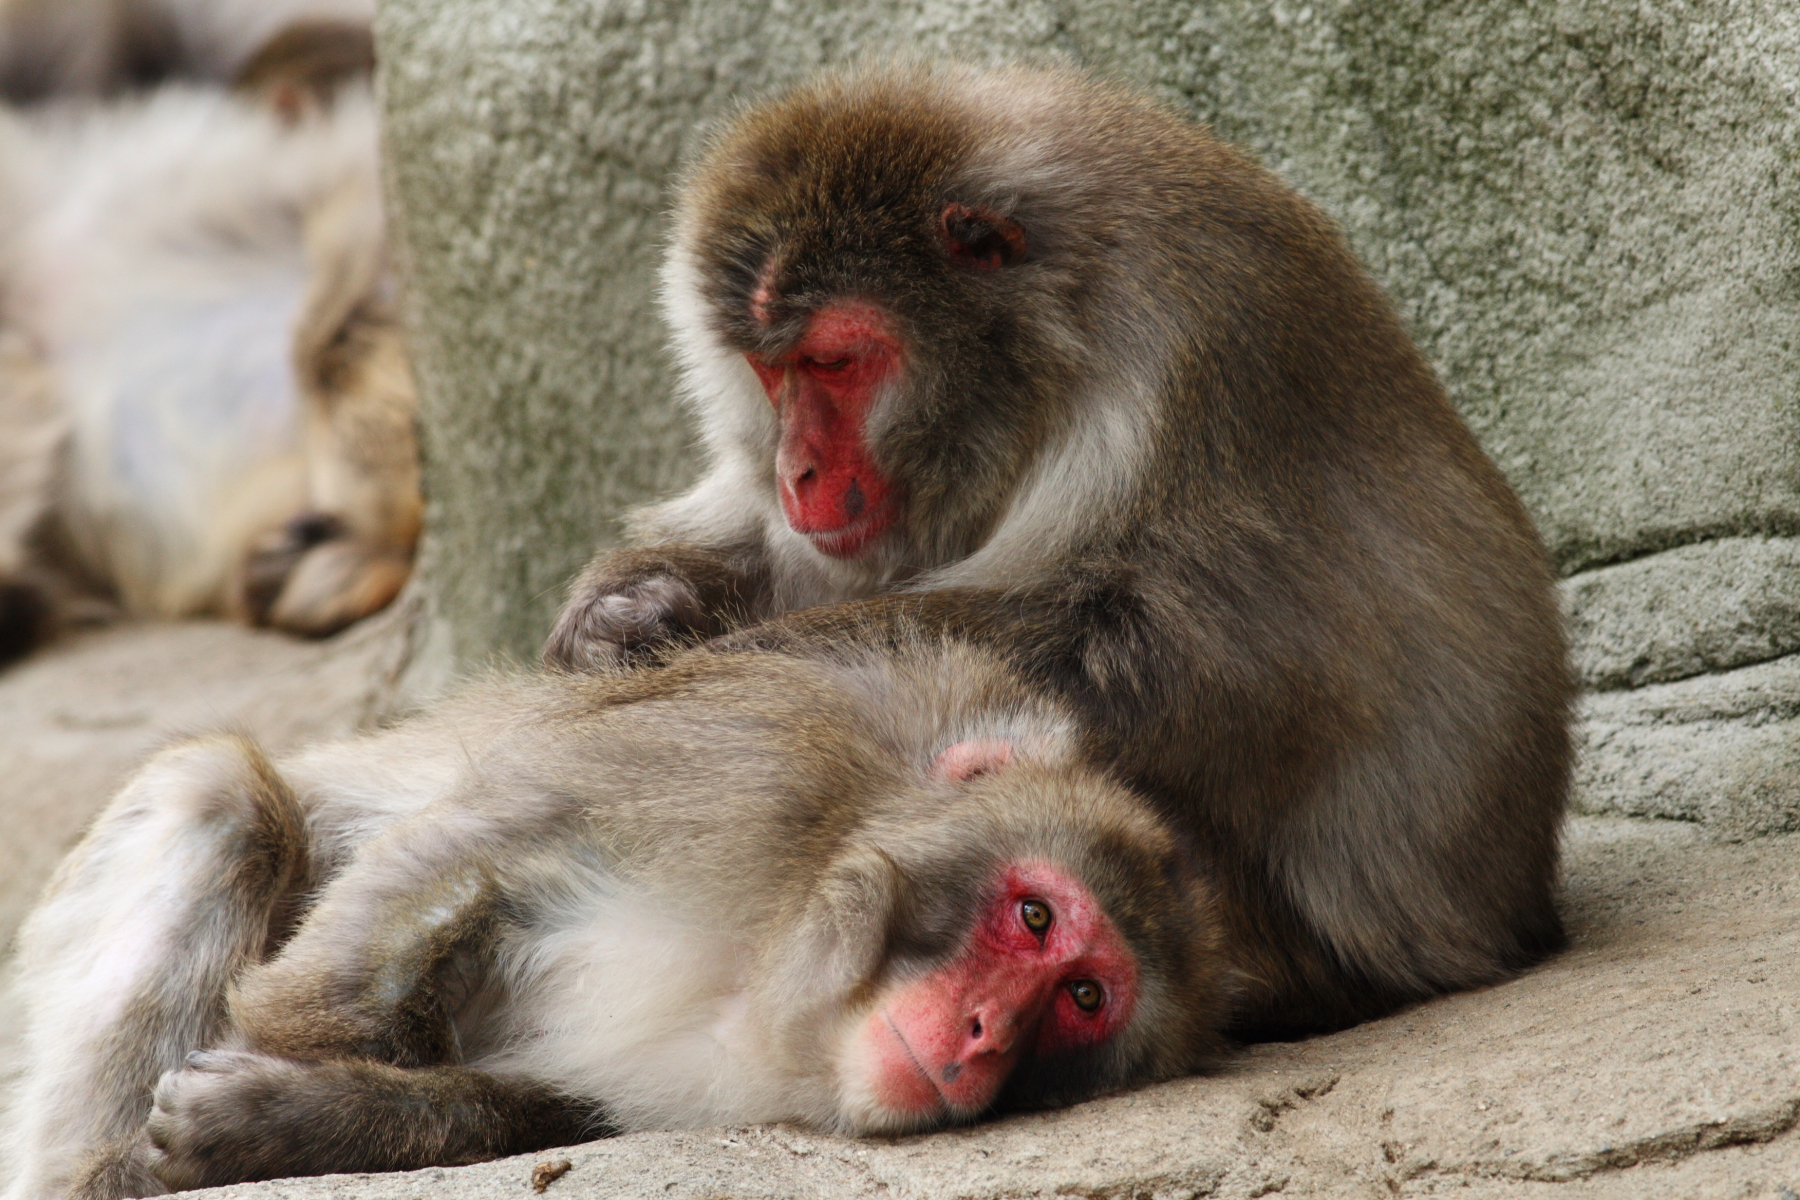 フリー画像 動物写真 哺乳類 猿 サル ニホンザル 毛づくろい フリー素材 画像素材なら 無料 フリー写真素材のフリーフォト